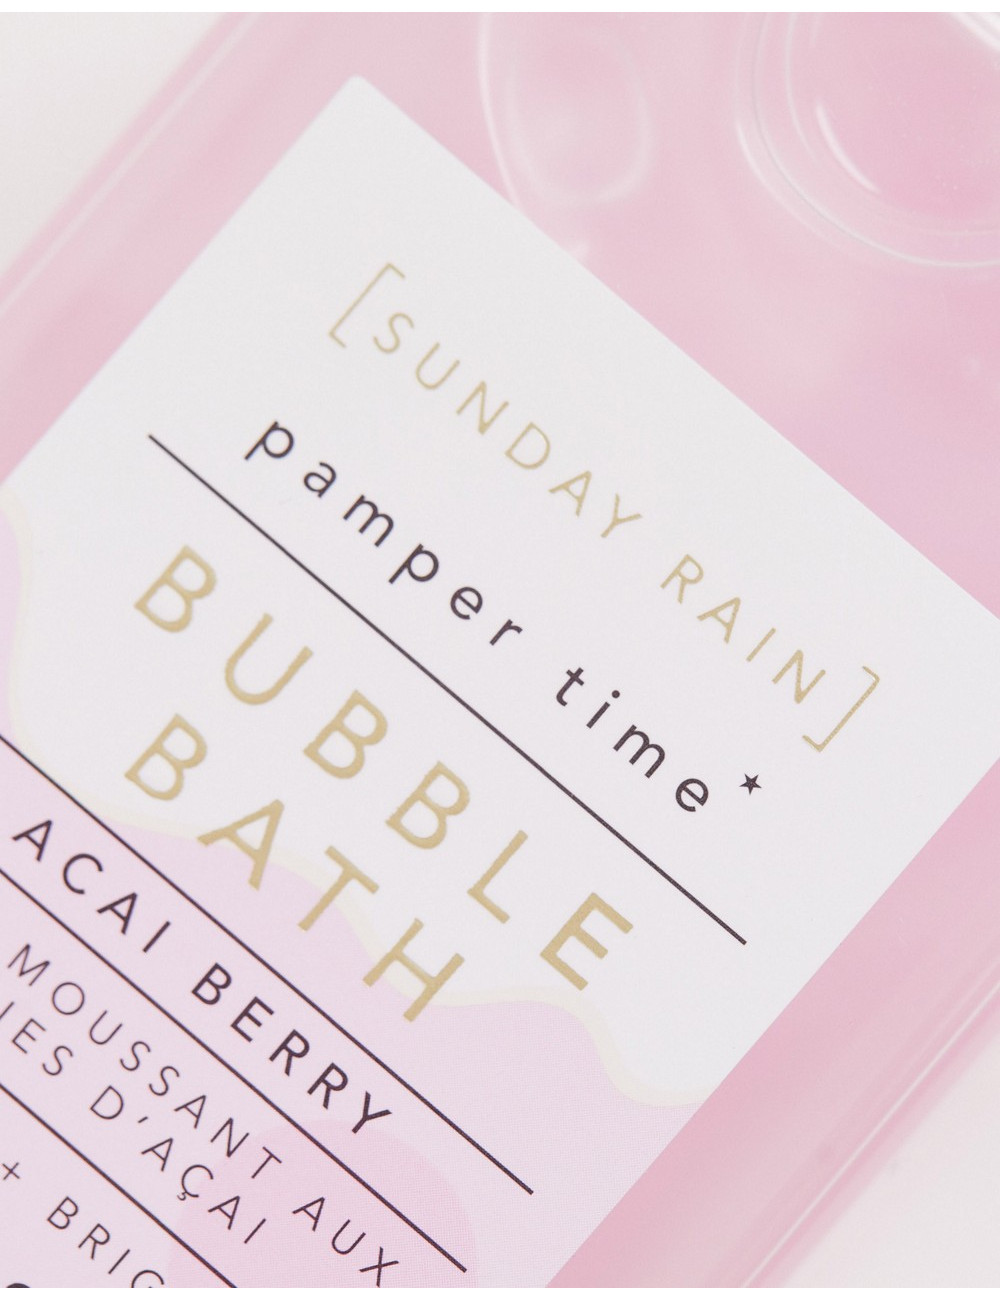 Sunday Rain Bubble Bath...